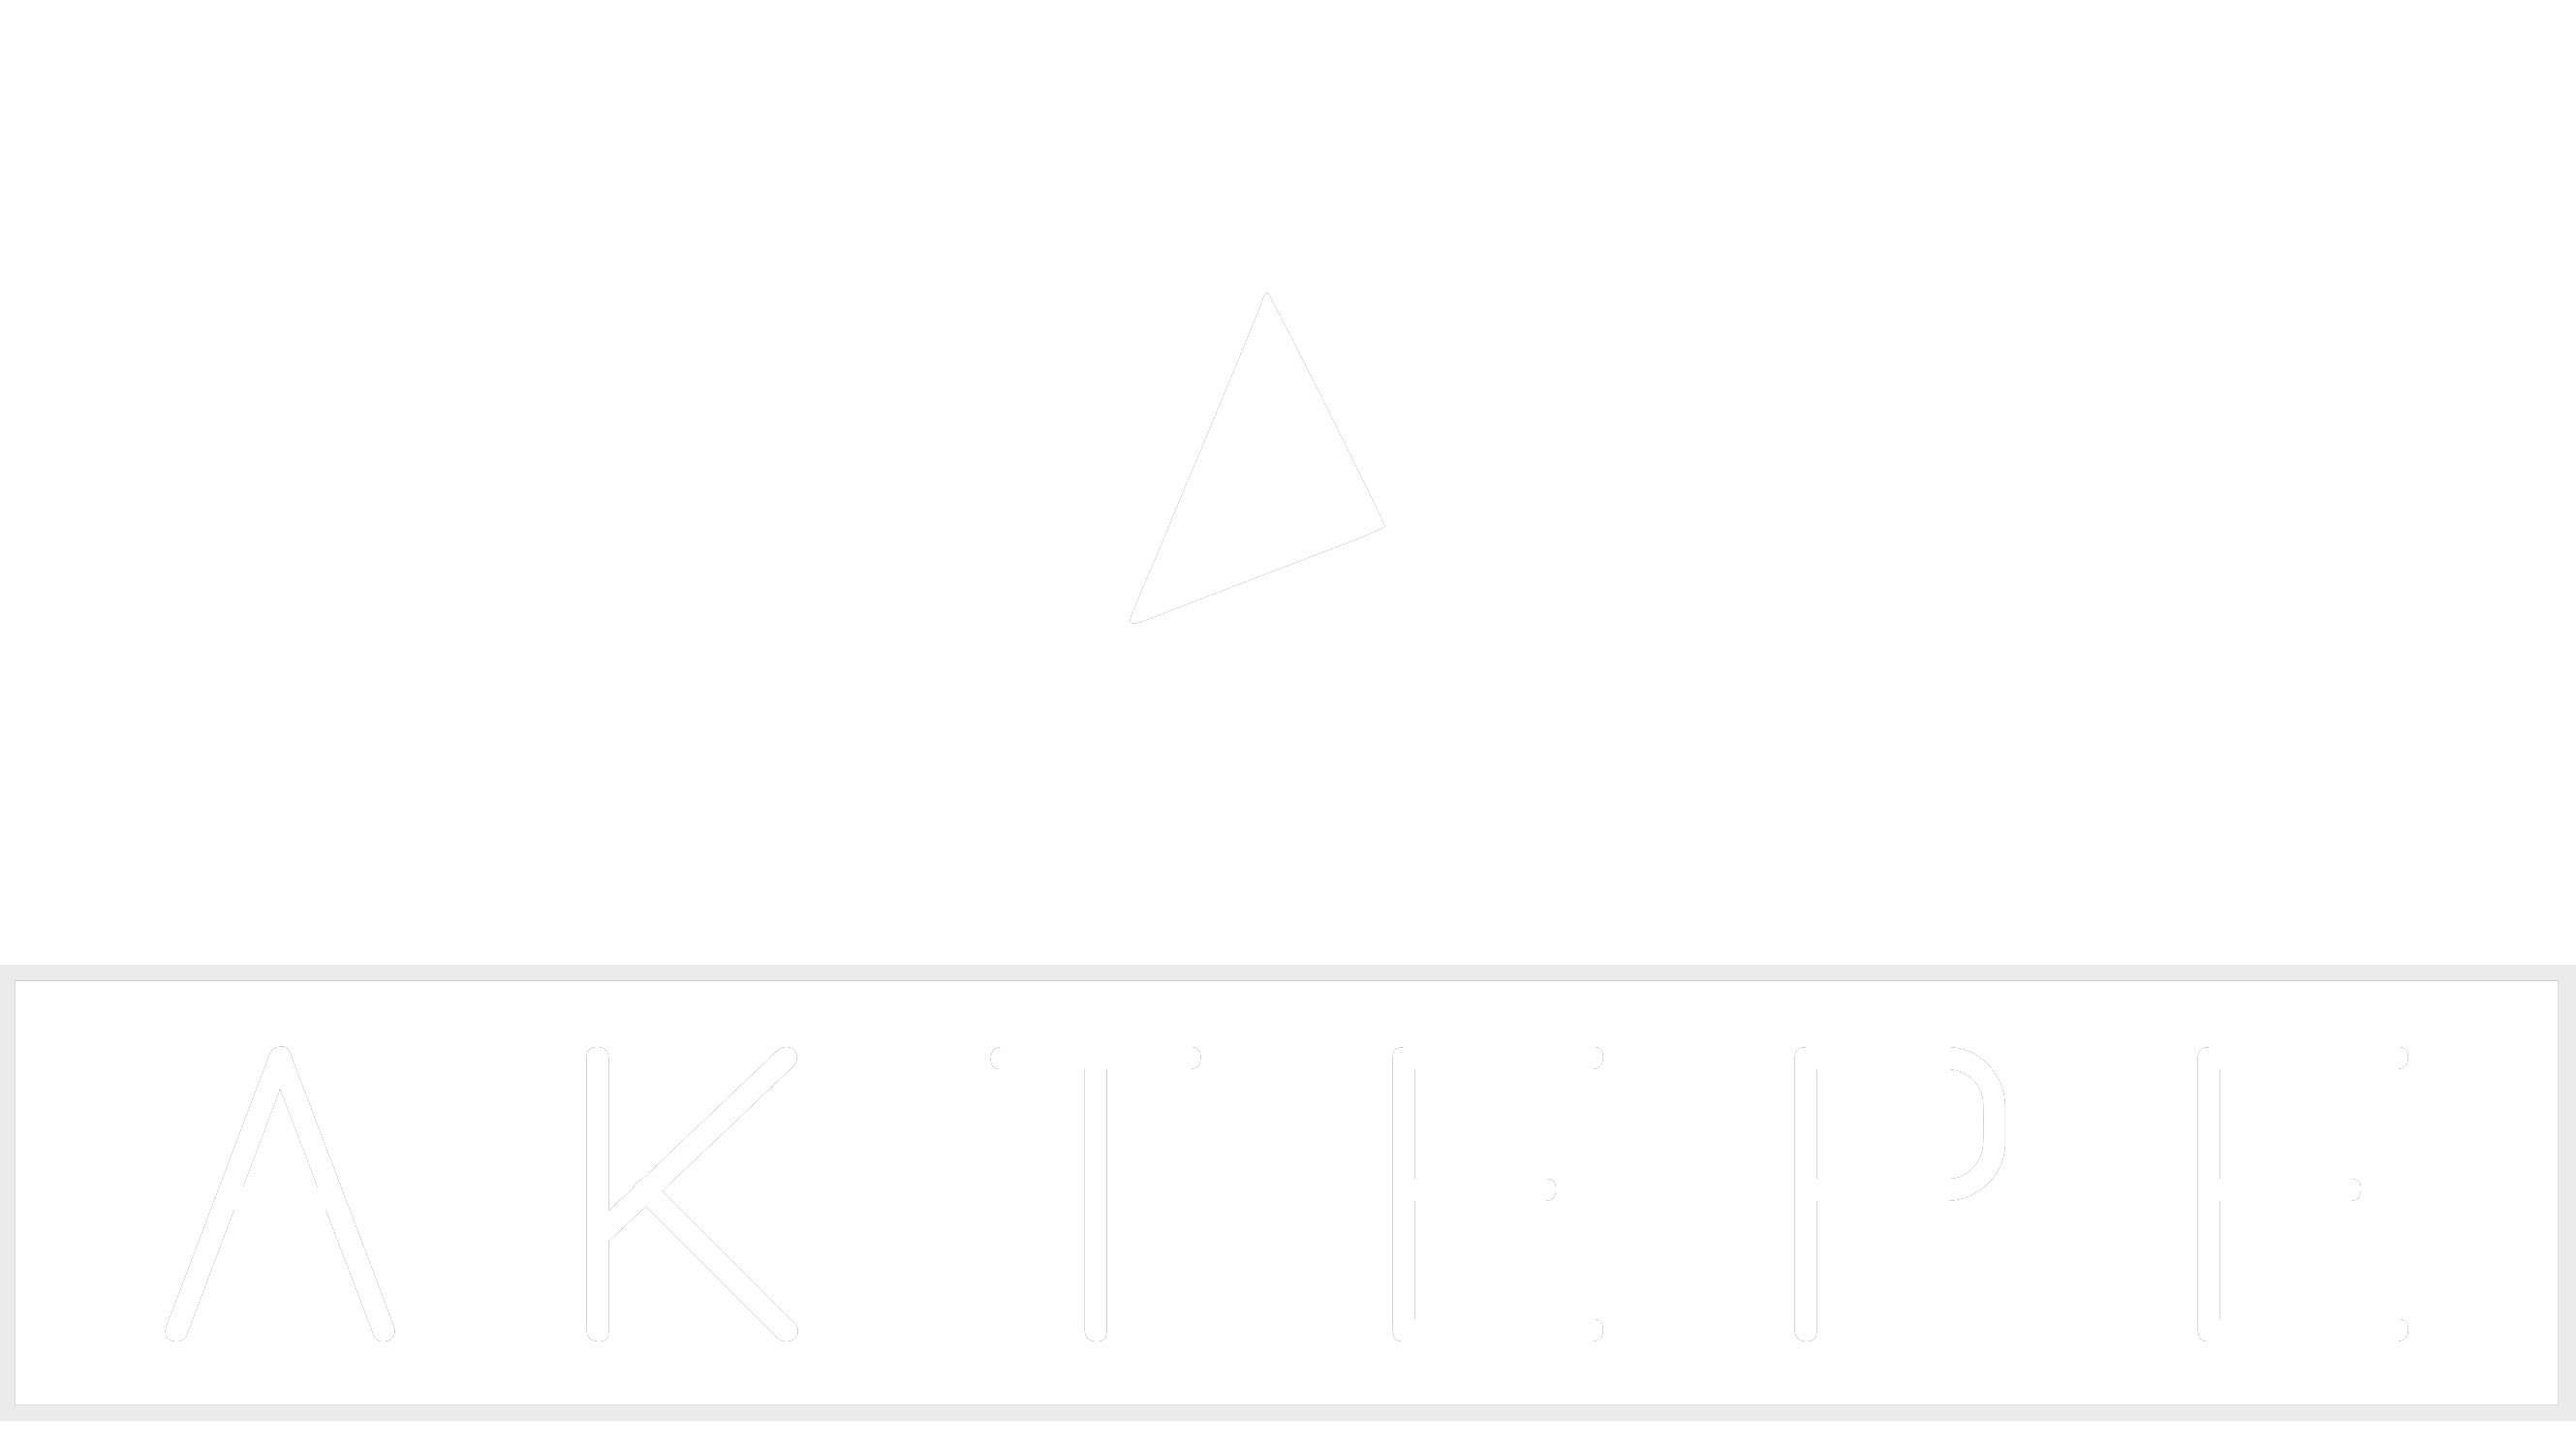 Nissan - Aktepe Shop - Oto Müzik Görüntü Navigasyon Sistemleri ve Teyp Çerçevesi Satış Merkezi